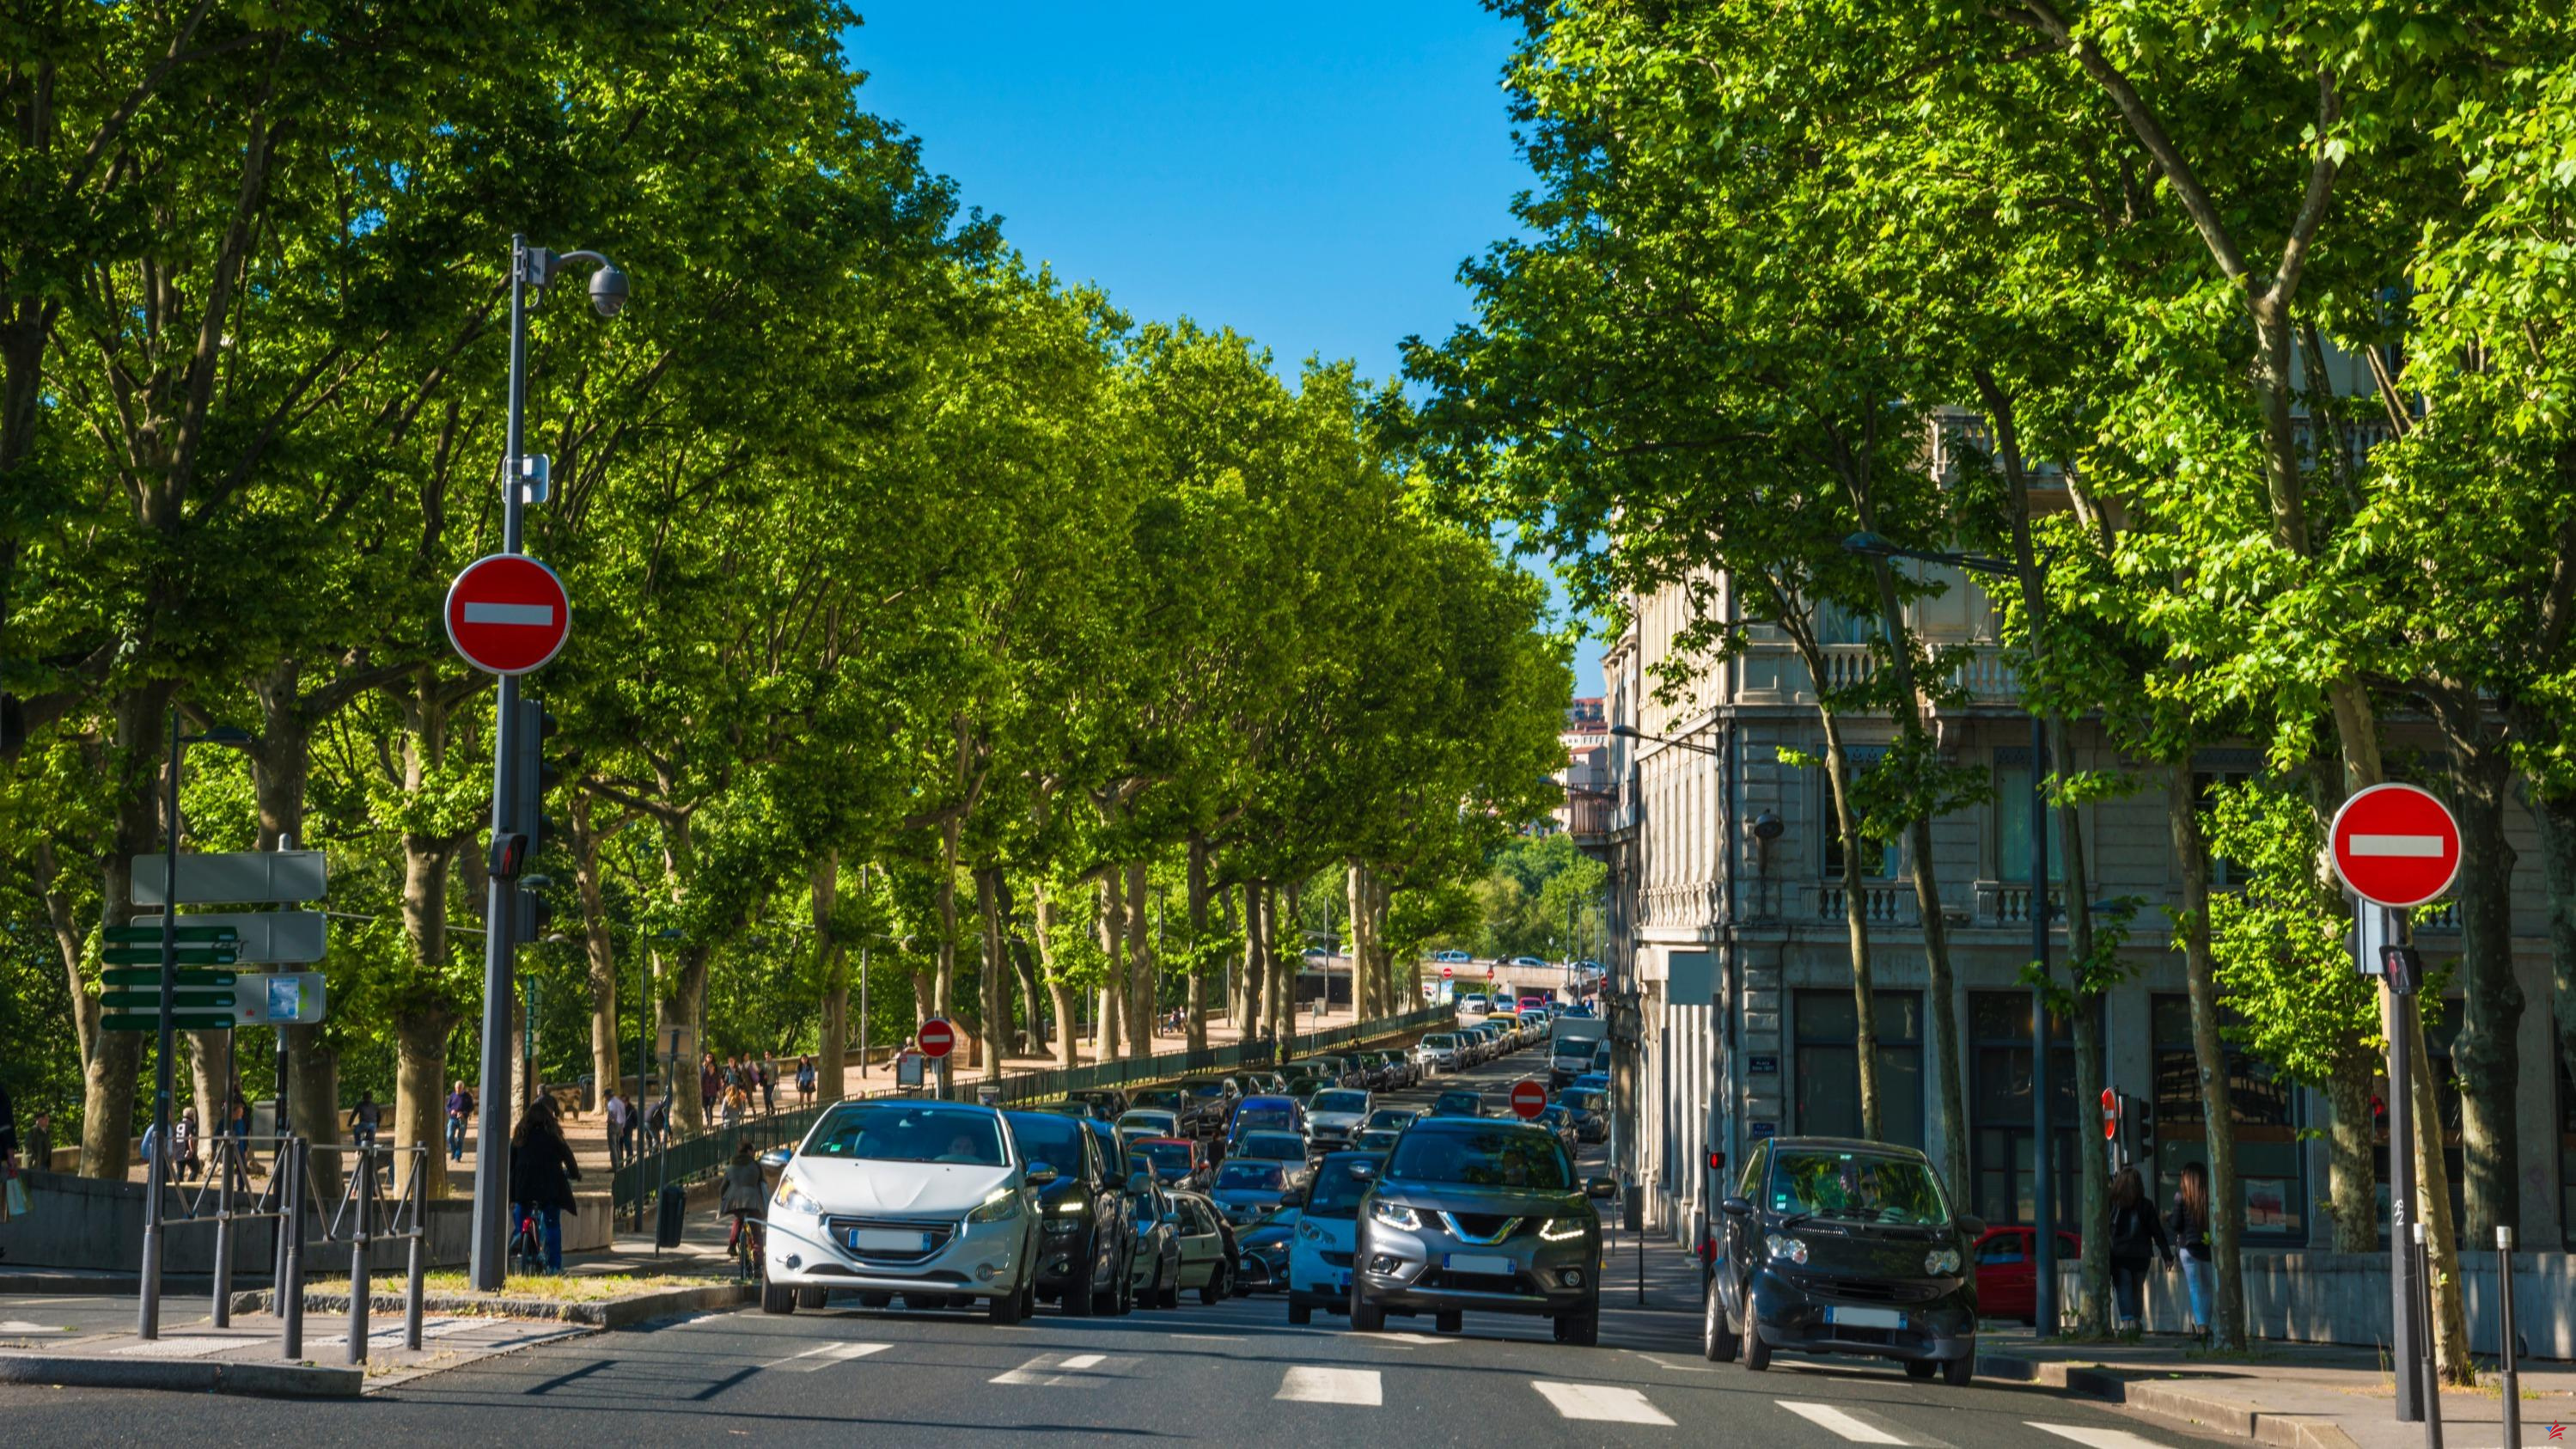 “Reducir la velocidad ha permitido reducir el número de accidentes”: en Lyon, los ecologistas elogian el paso a 30 km/h en la ciudad